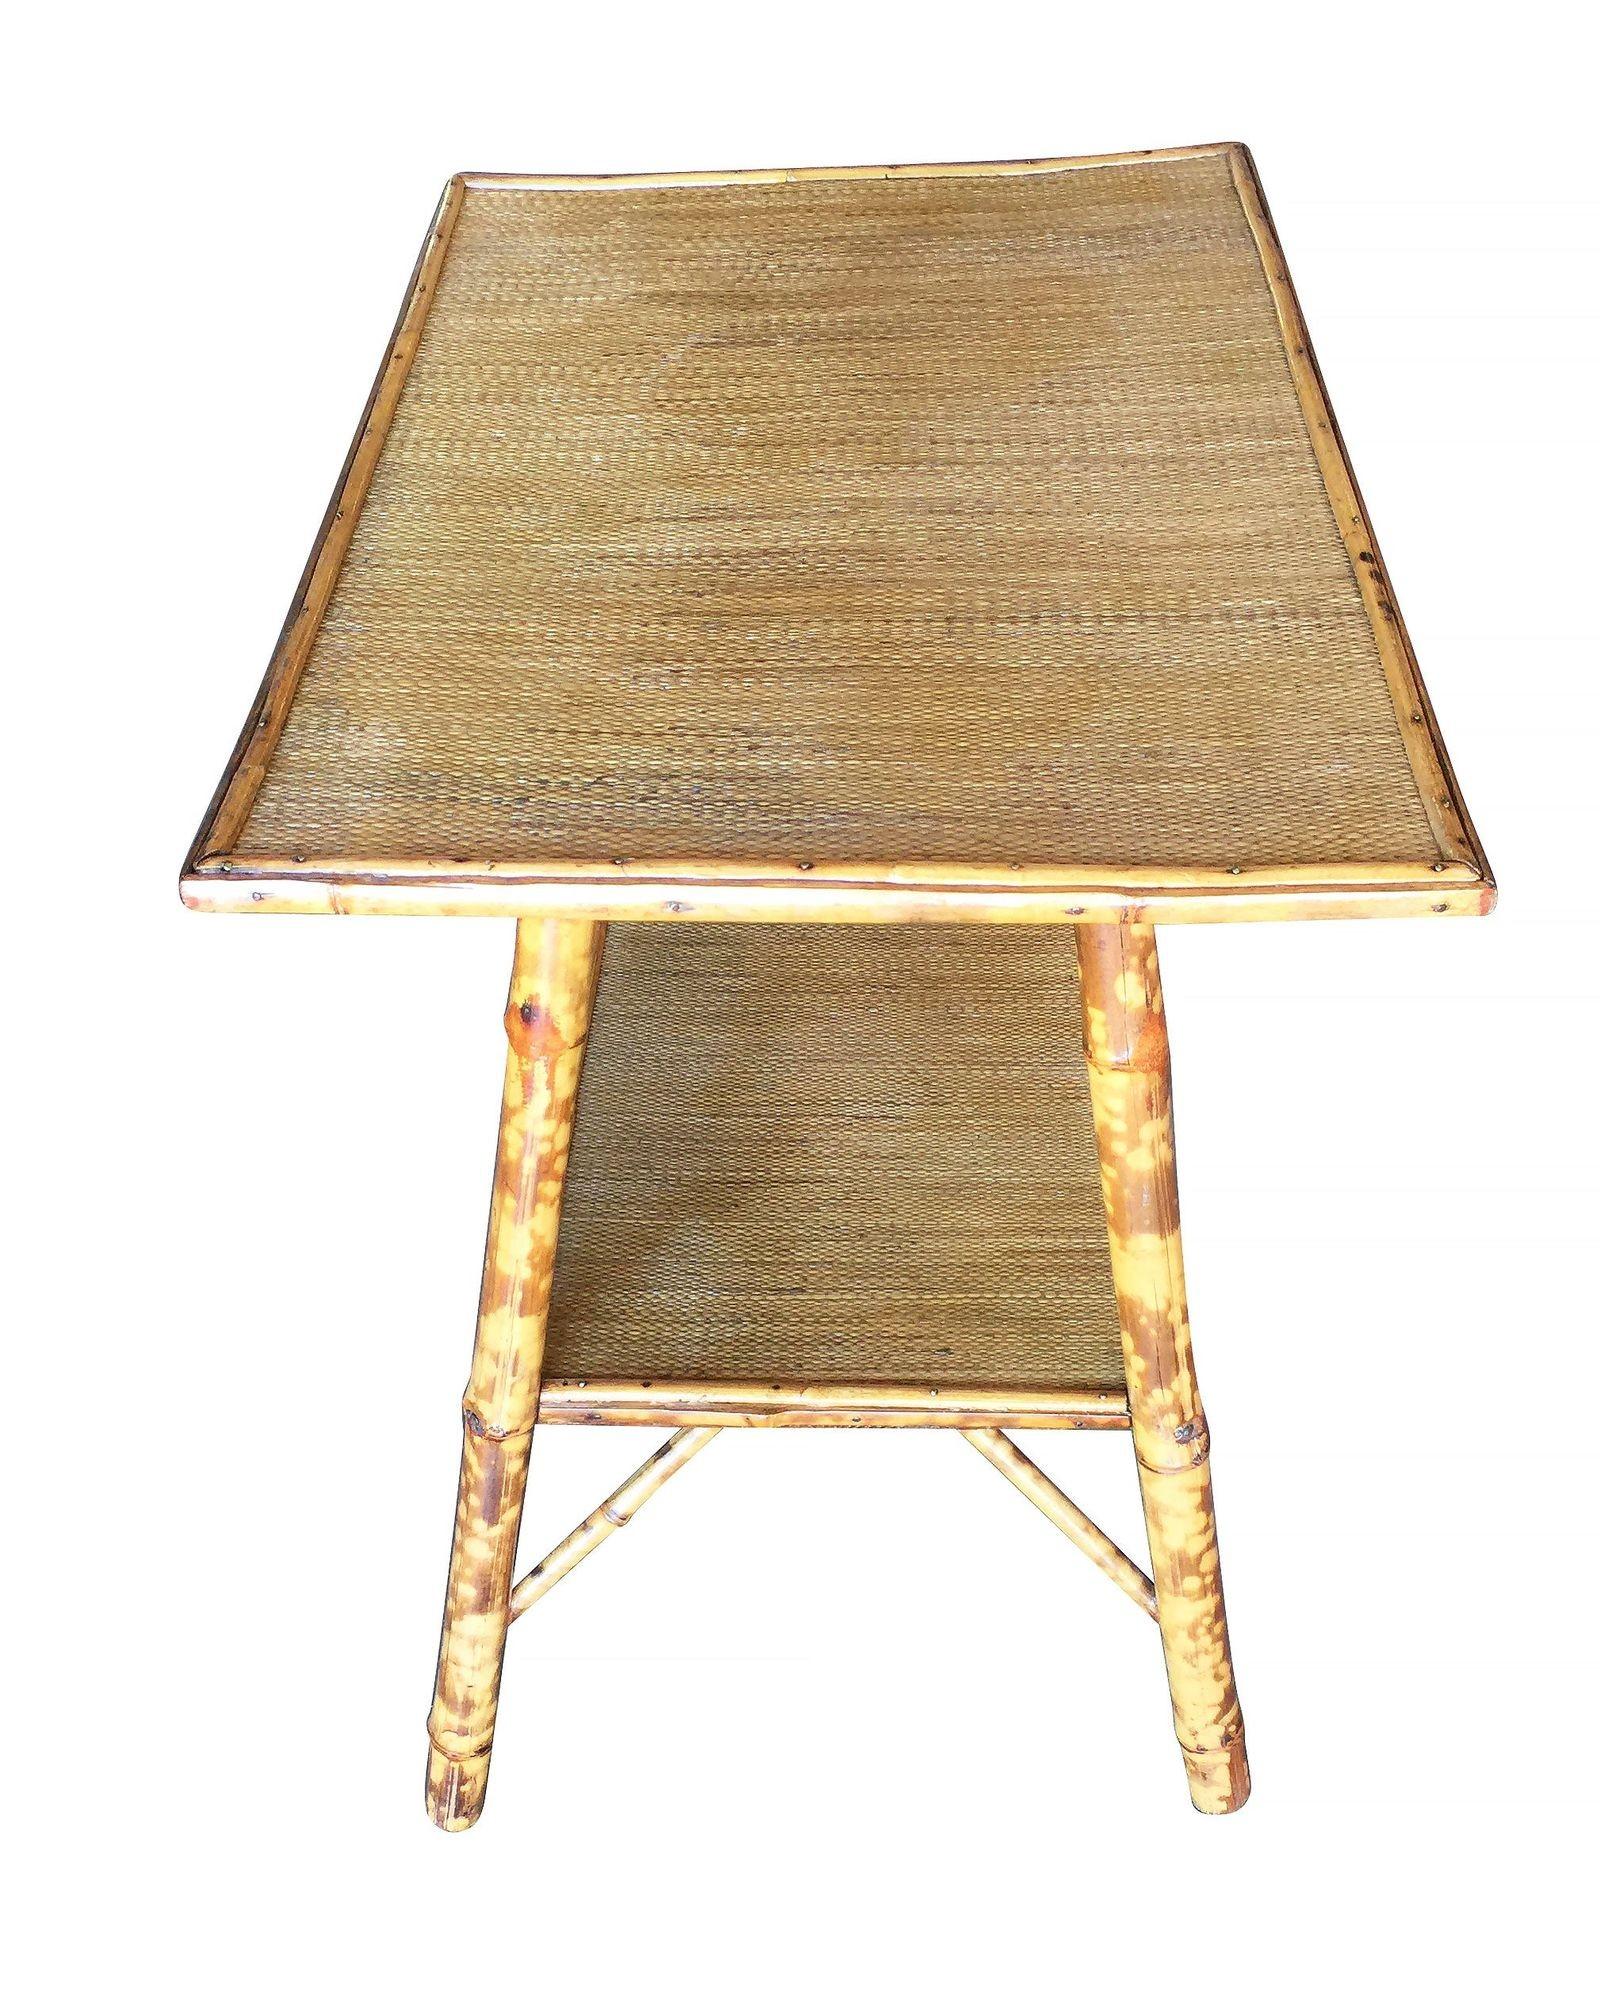 Ancienne table d'appoint en bambou tigré à mouvement ascétique, avec plateau en nattes de riz et étagère inférieure secondaire.

Restauré à neuf pour vous.

Tous les meubles en rotin, en bambou et en osier ont été soigneusement remis à neuf selon